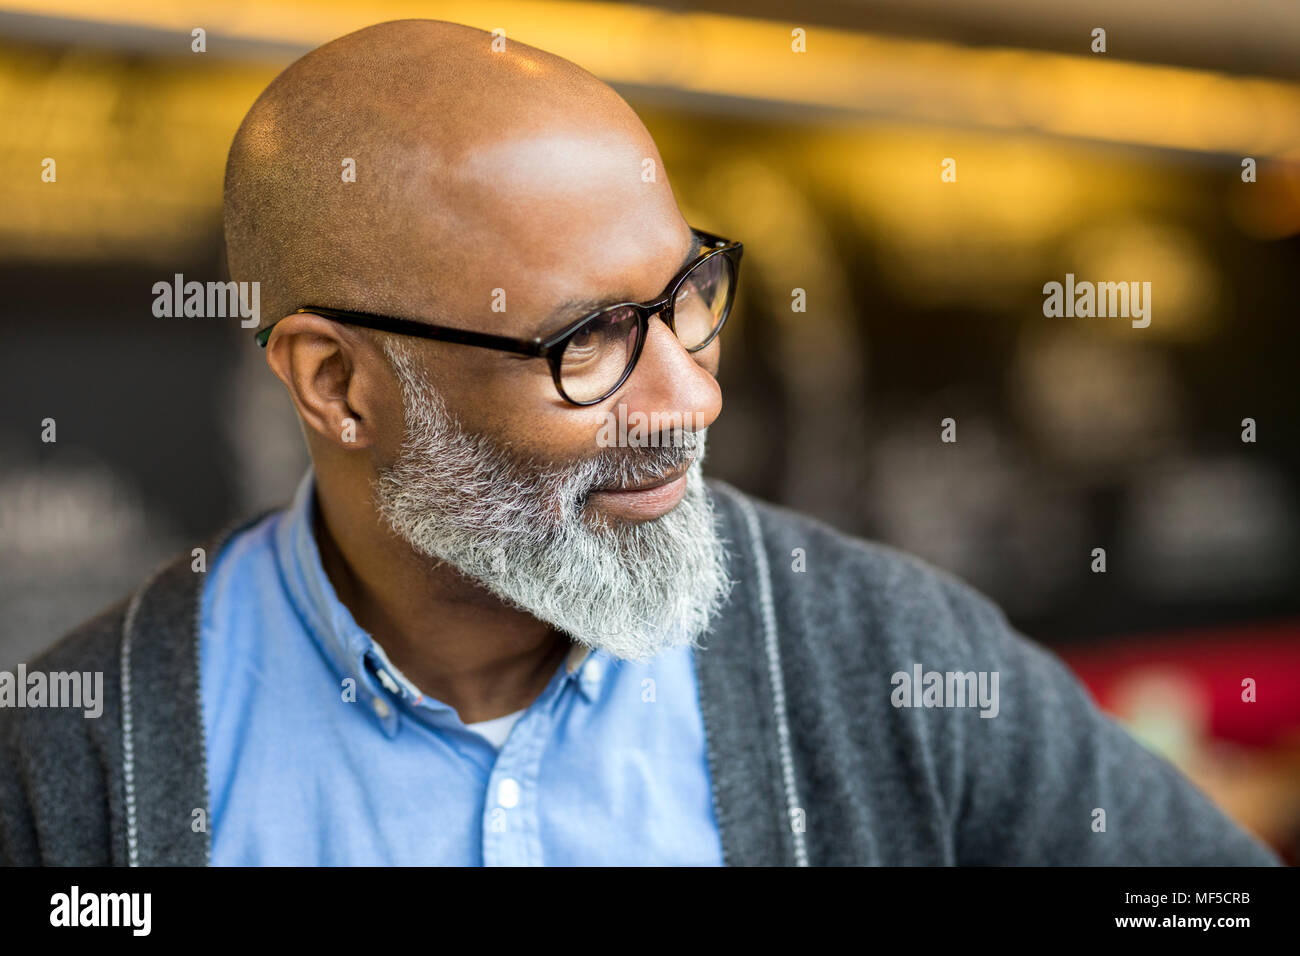 Portrait d'homme chauve avec barbe grise portant des lunettes Banque D'Images